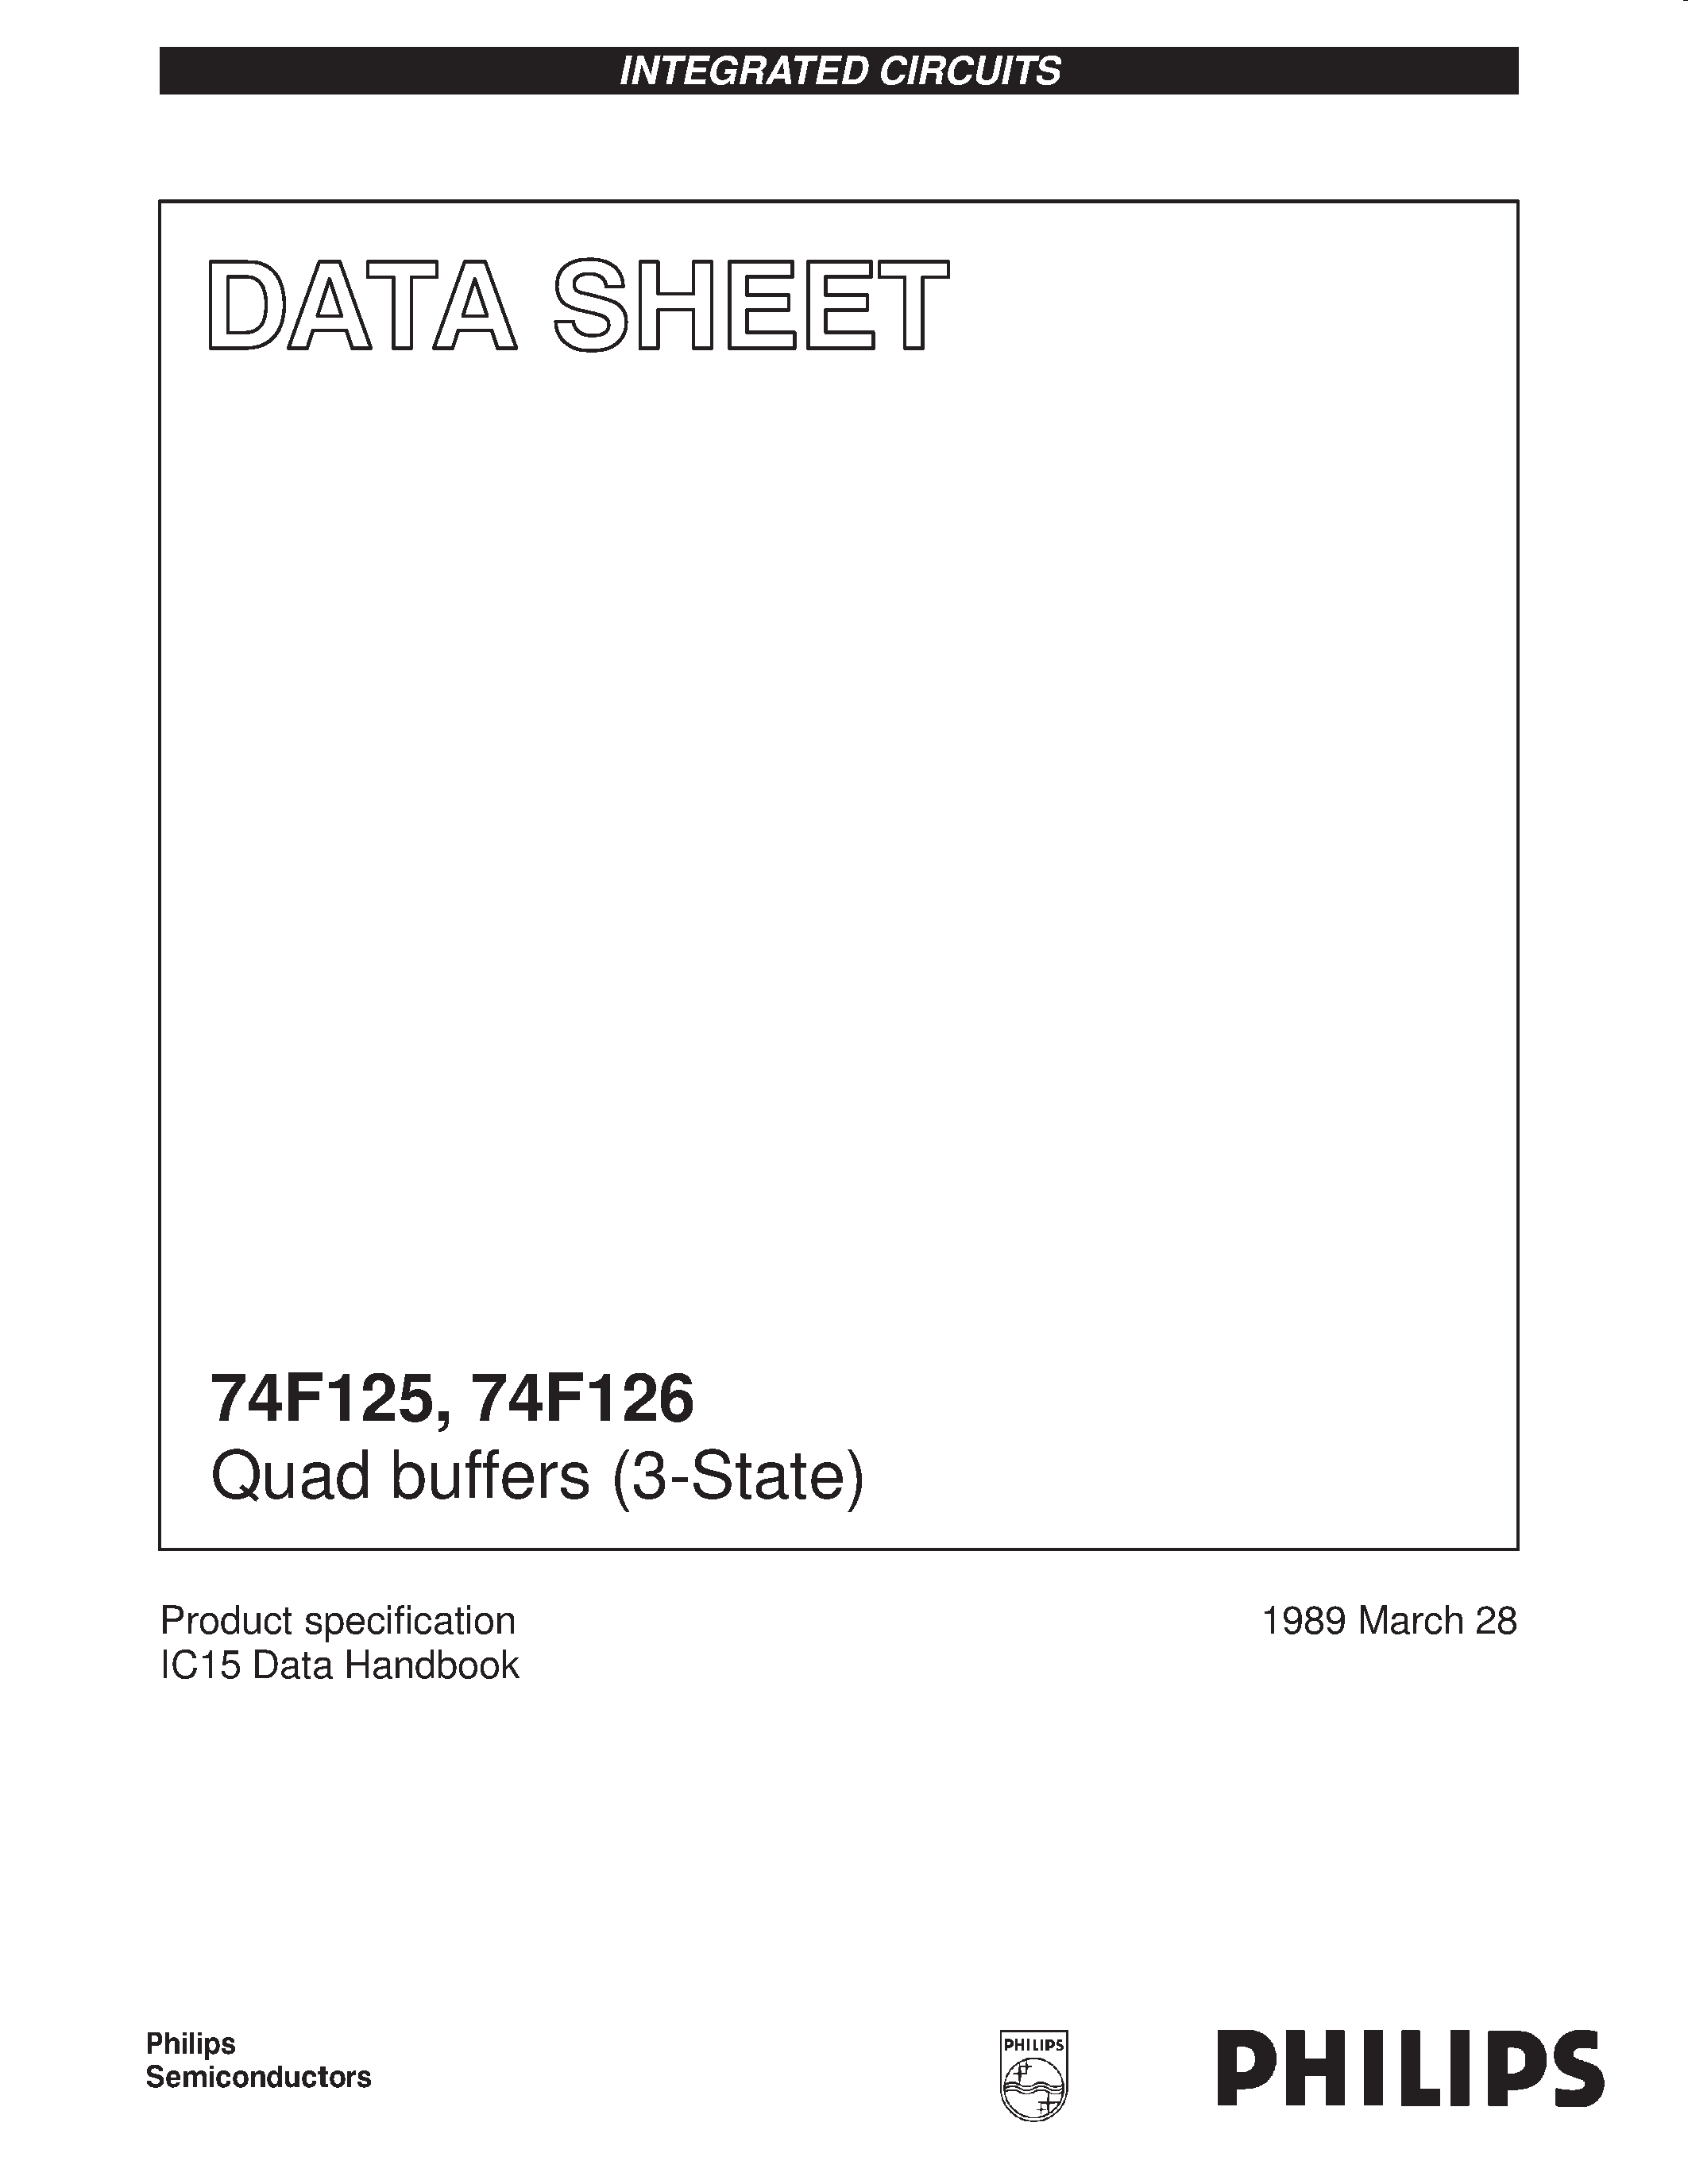 Даташит 74F126 - Quad buffers 3-State страница 1